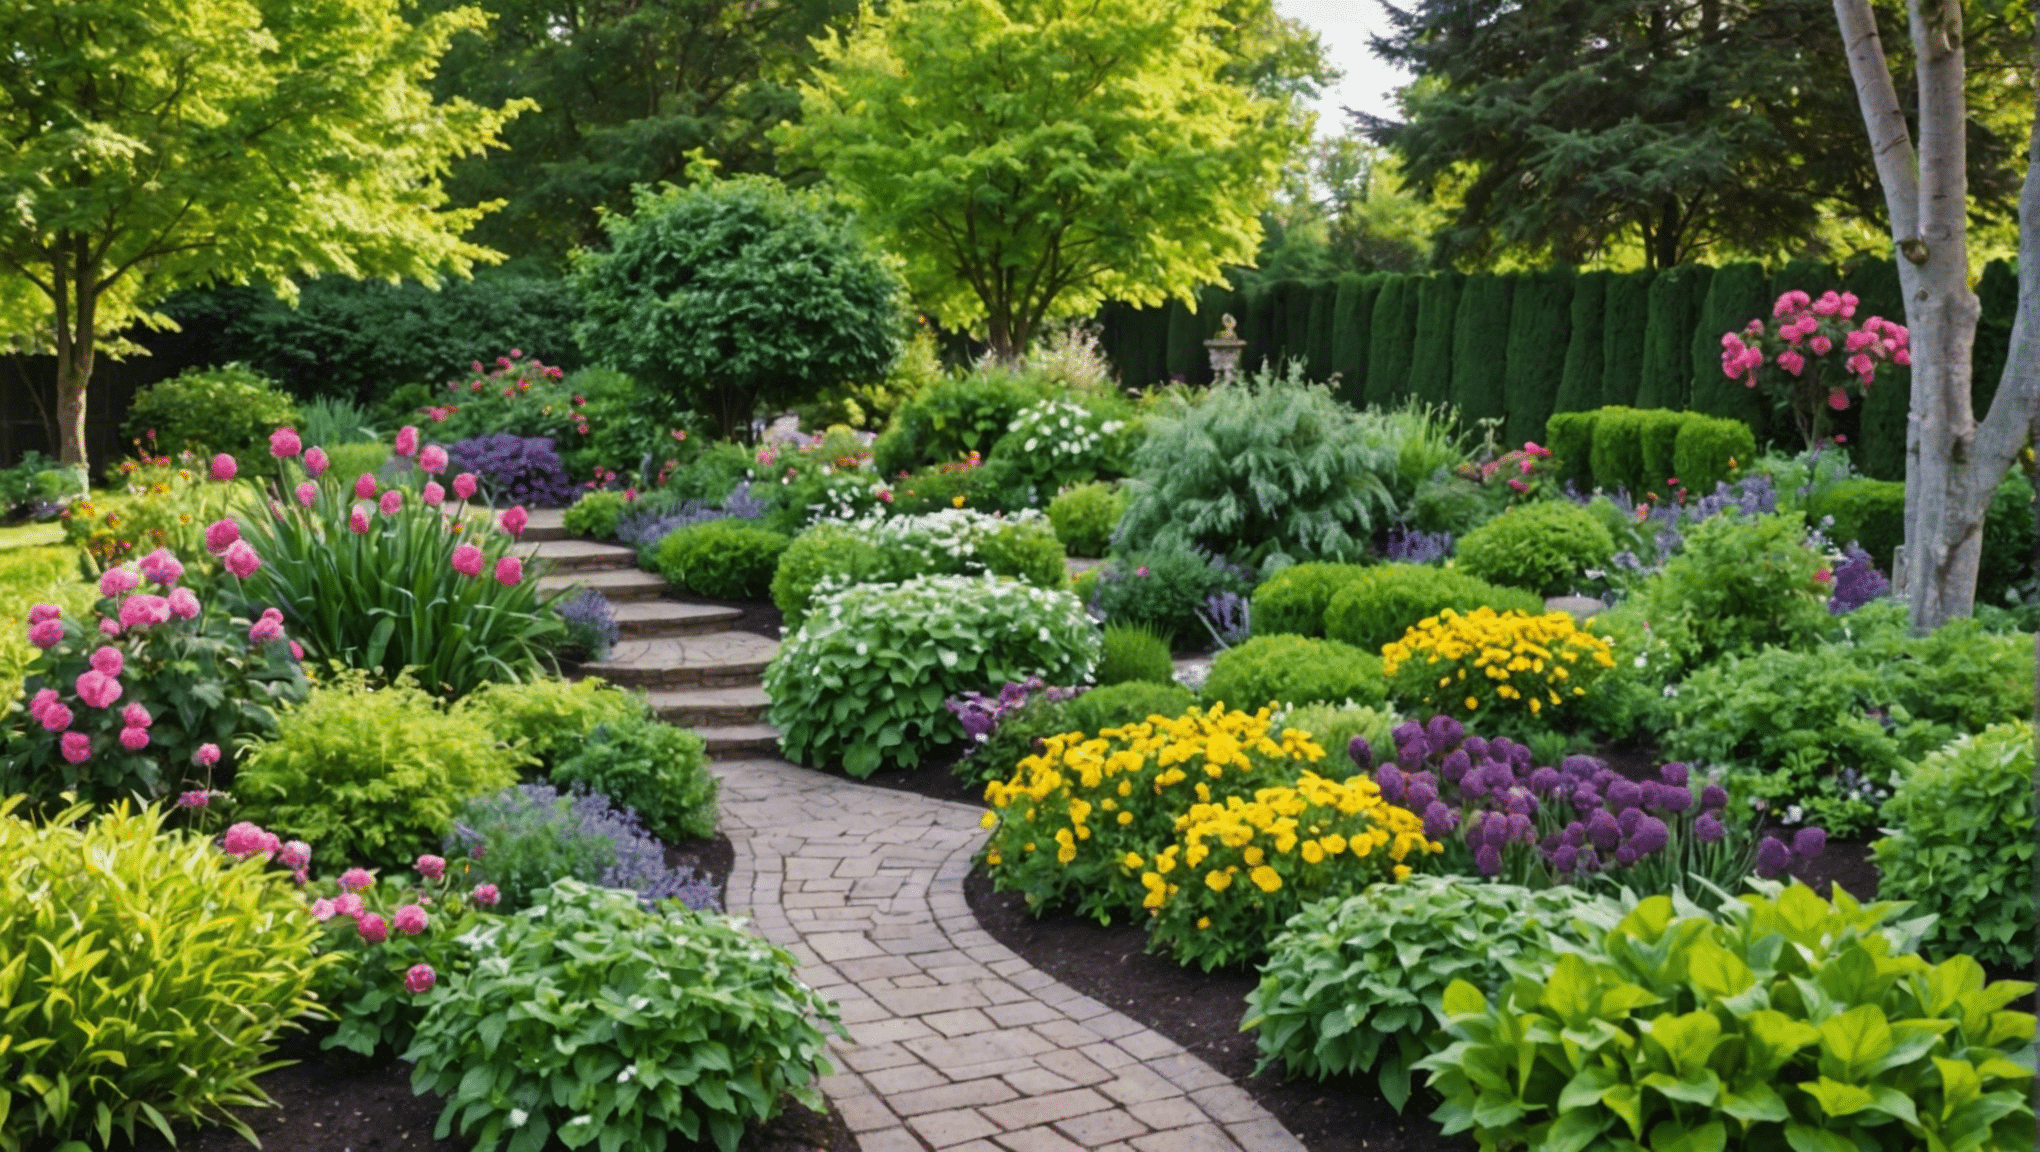 objavte základné knihy o záhradníctve pre začiatočníkov a naštartujte svoju záhradkársku cestu odbornými radami a praktickými tipmi.